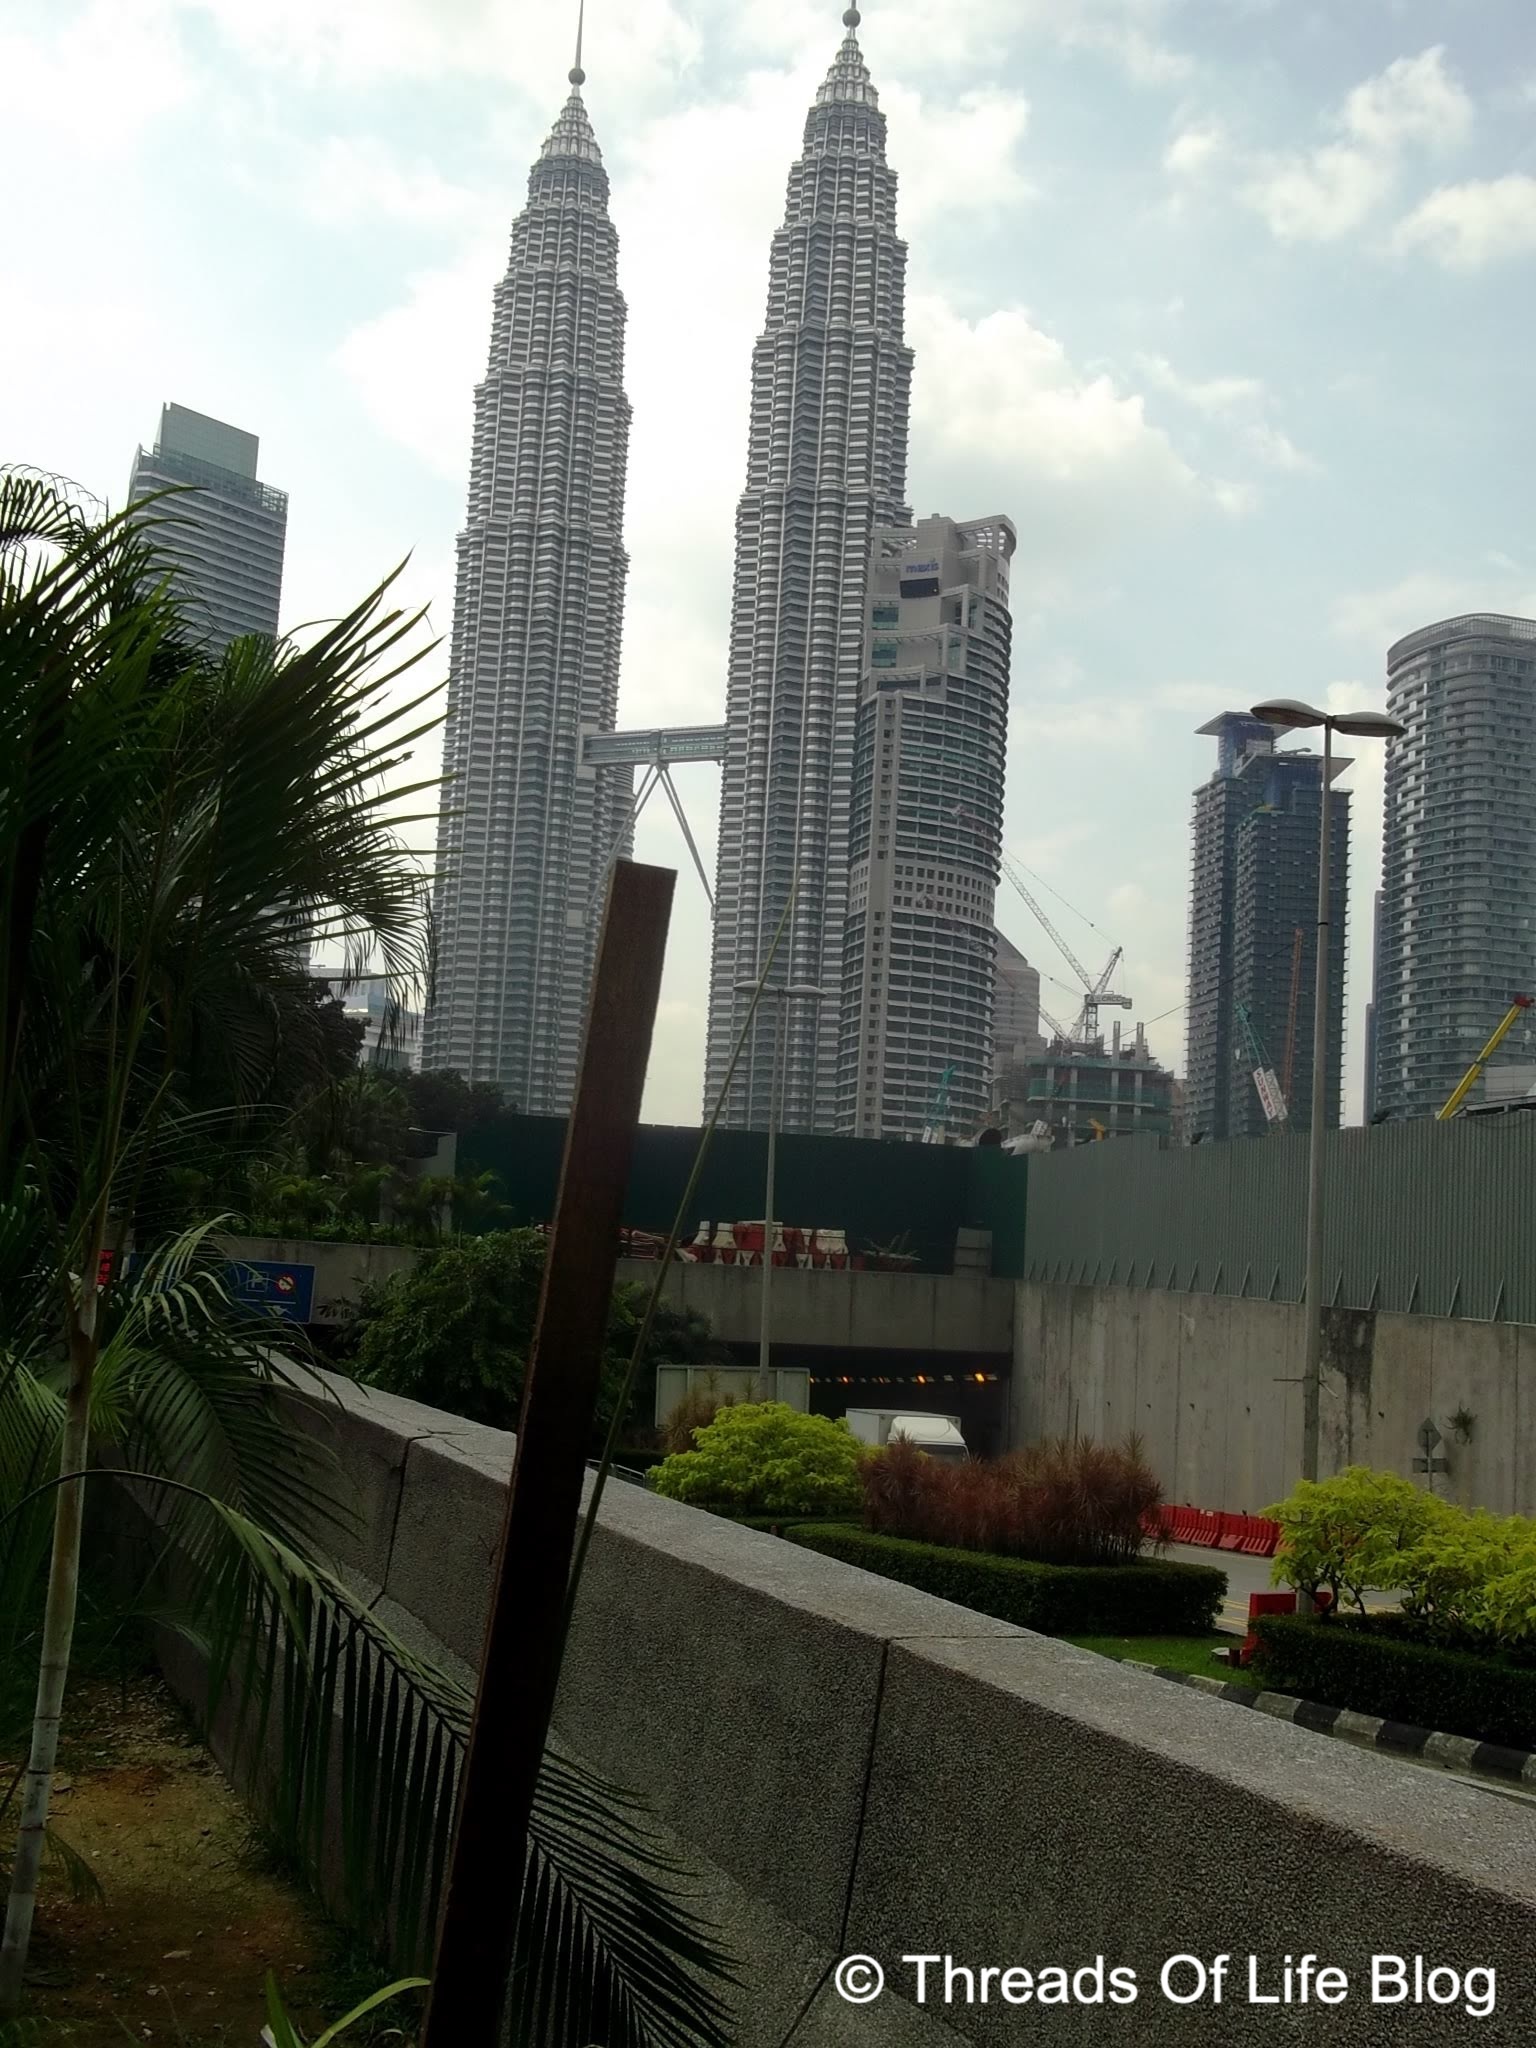 Petronas towers - View 2